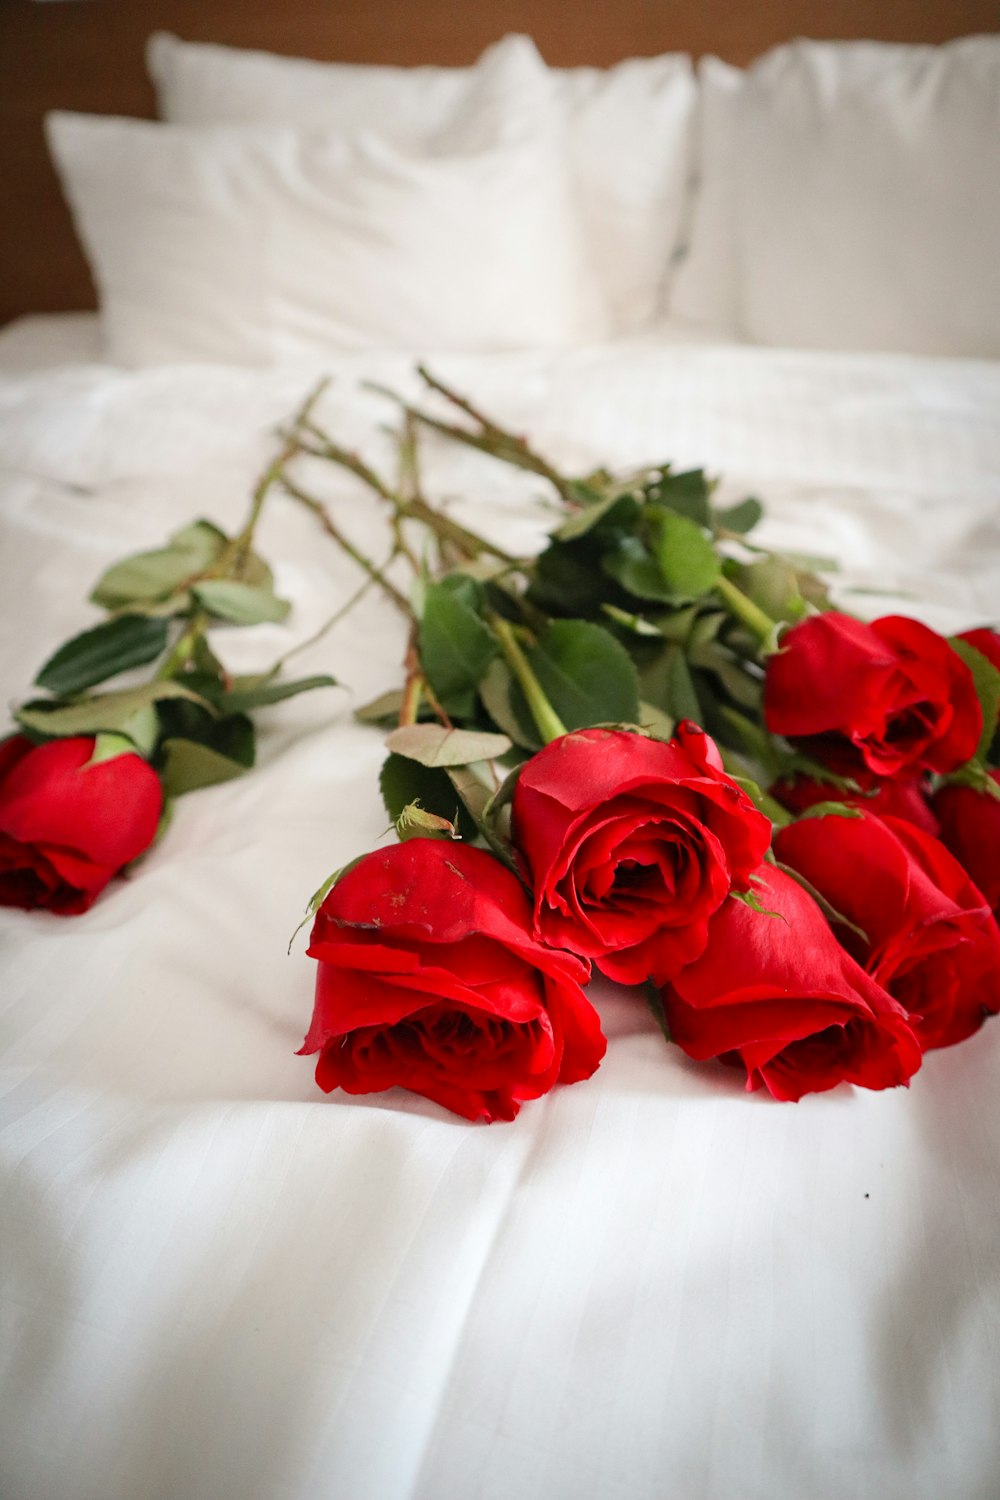 Un ramo de rosas rojas acostadas en una cama